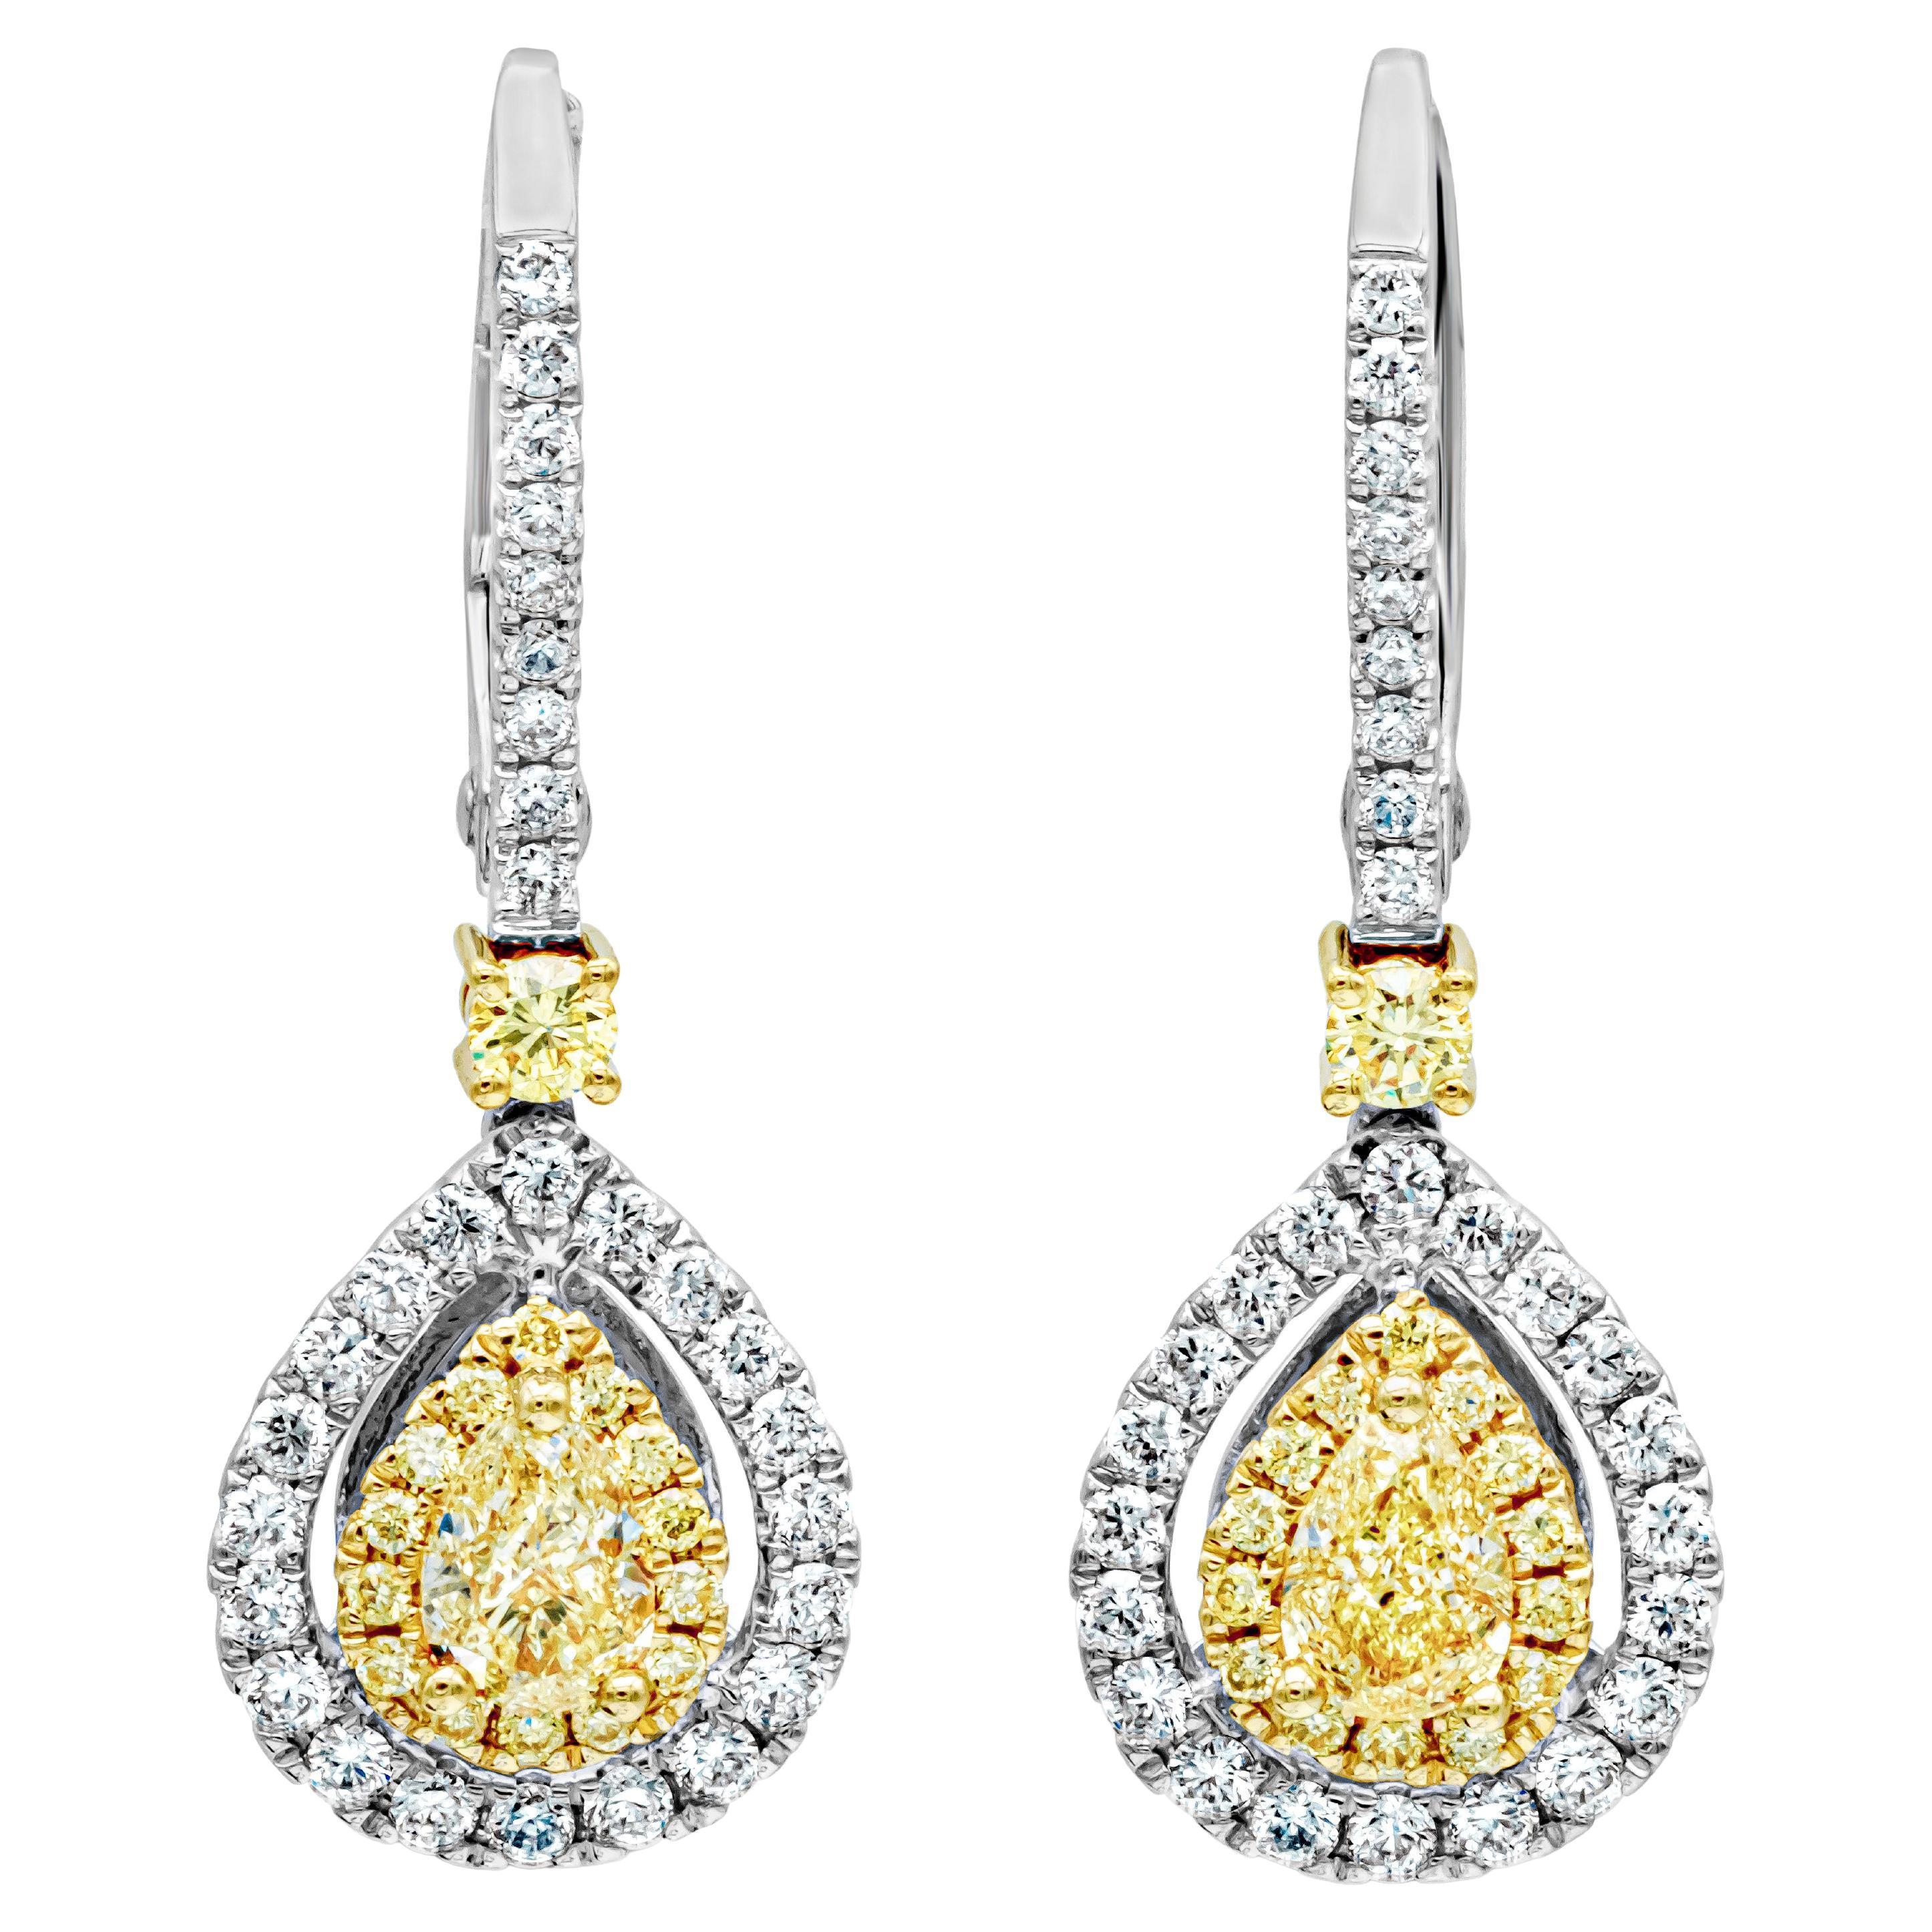 Roman Malakov Pendants d'oreilles en forme de poire avec diamants jaunes fantaisie de 0.84 carat au total